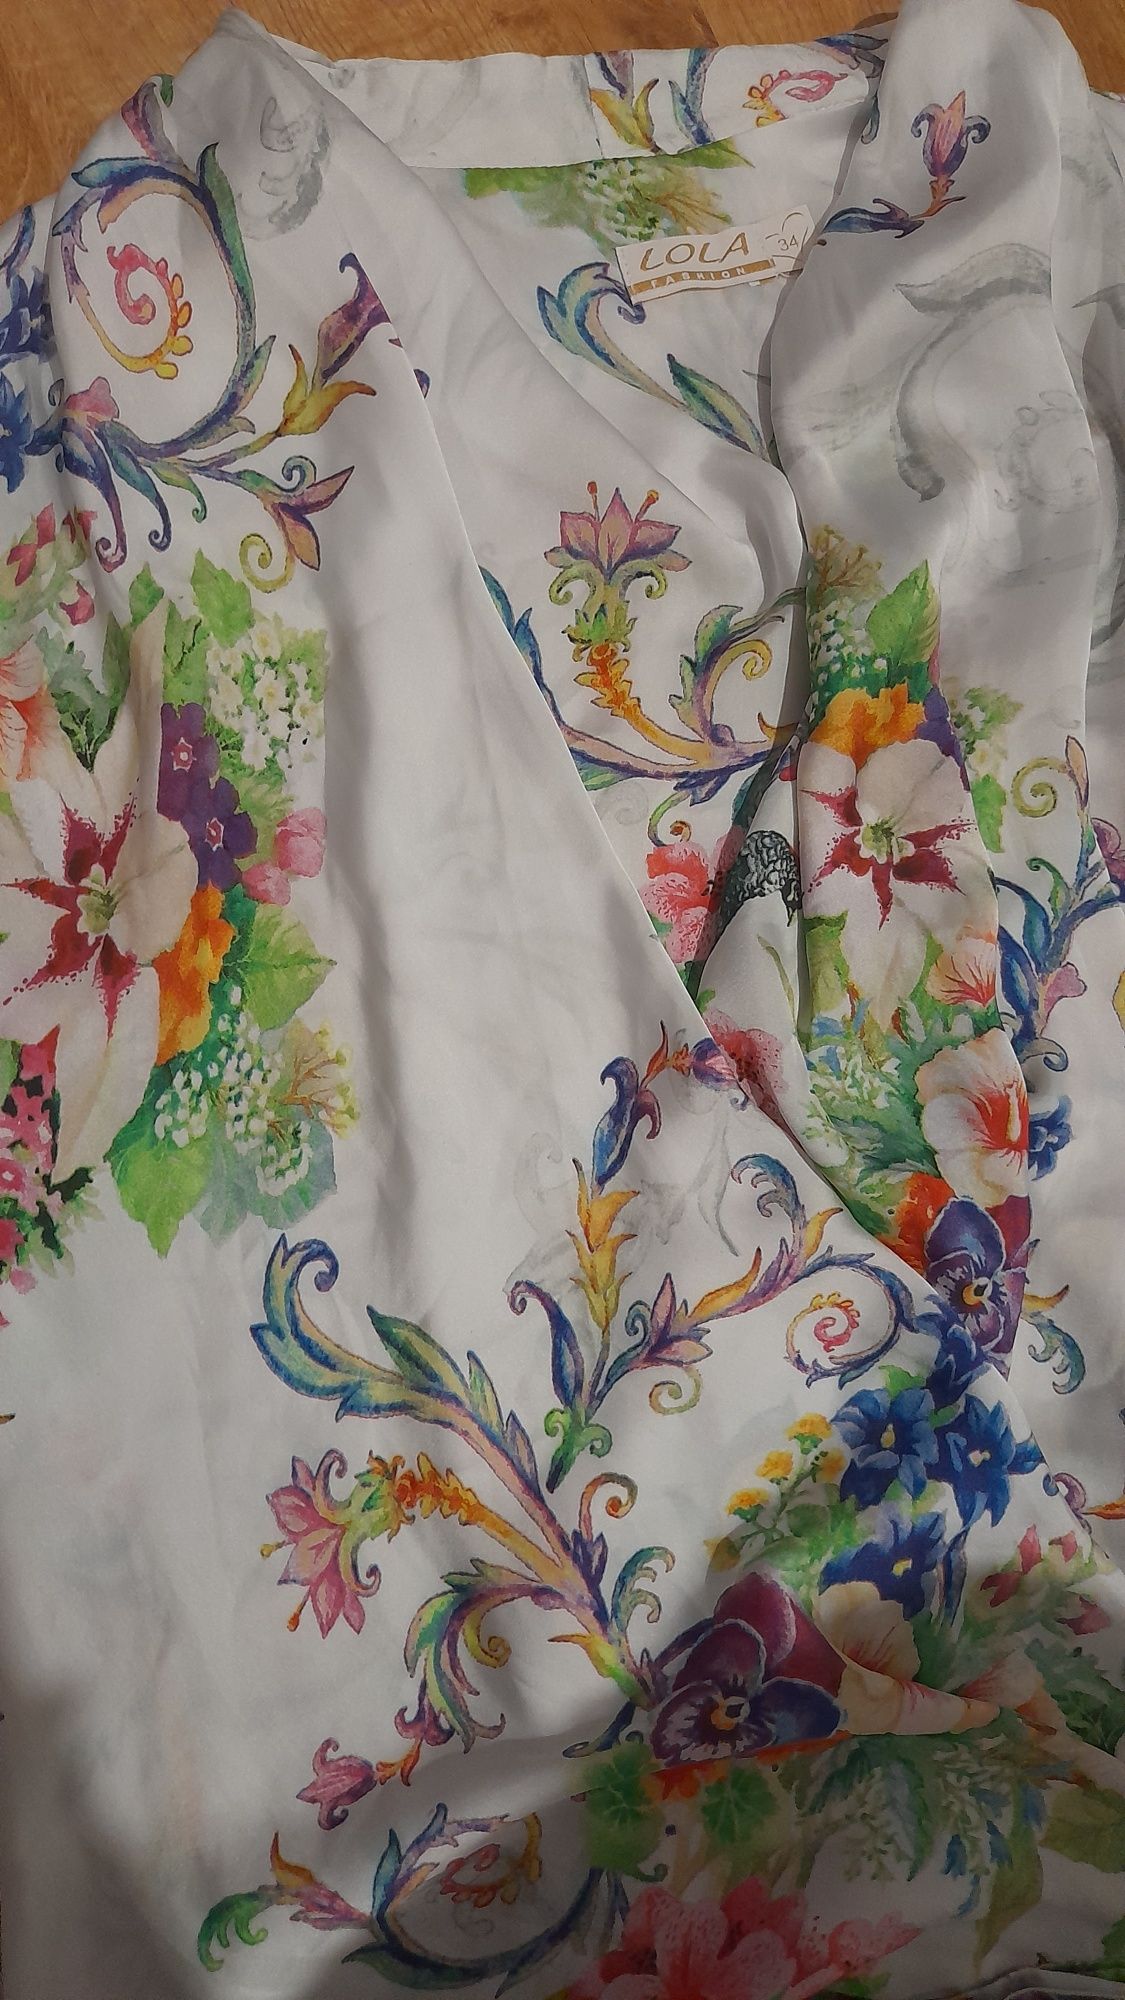 Nowa piękna bluzka biała wiosenna jak satynowa, w kwiaty, kokarda